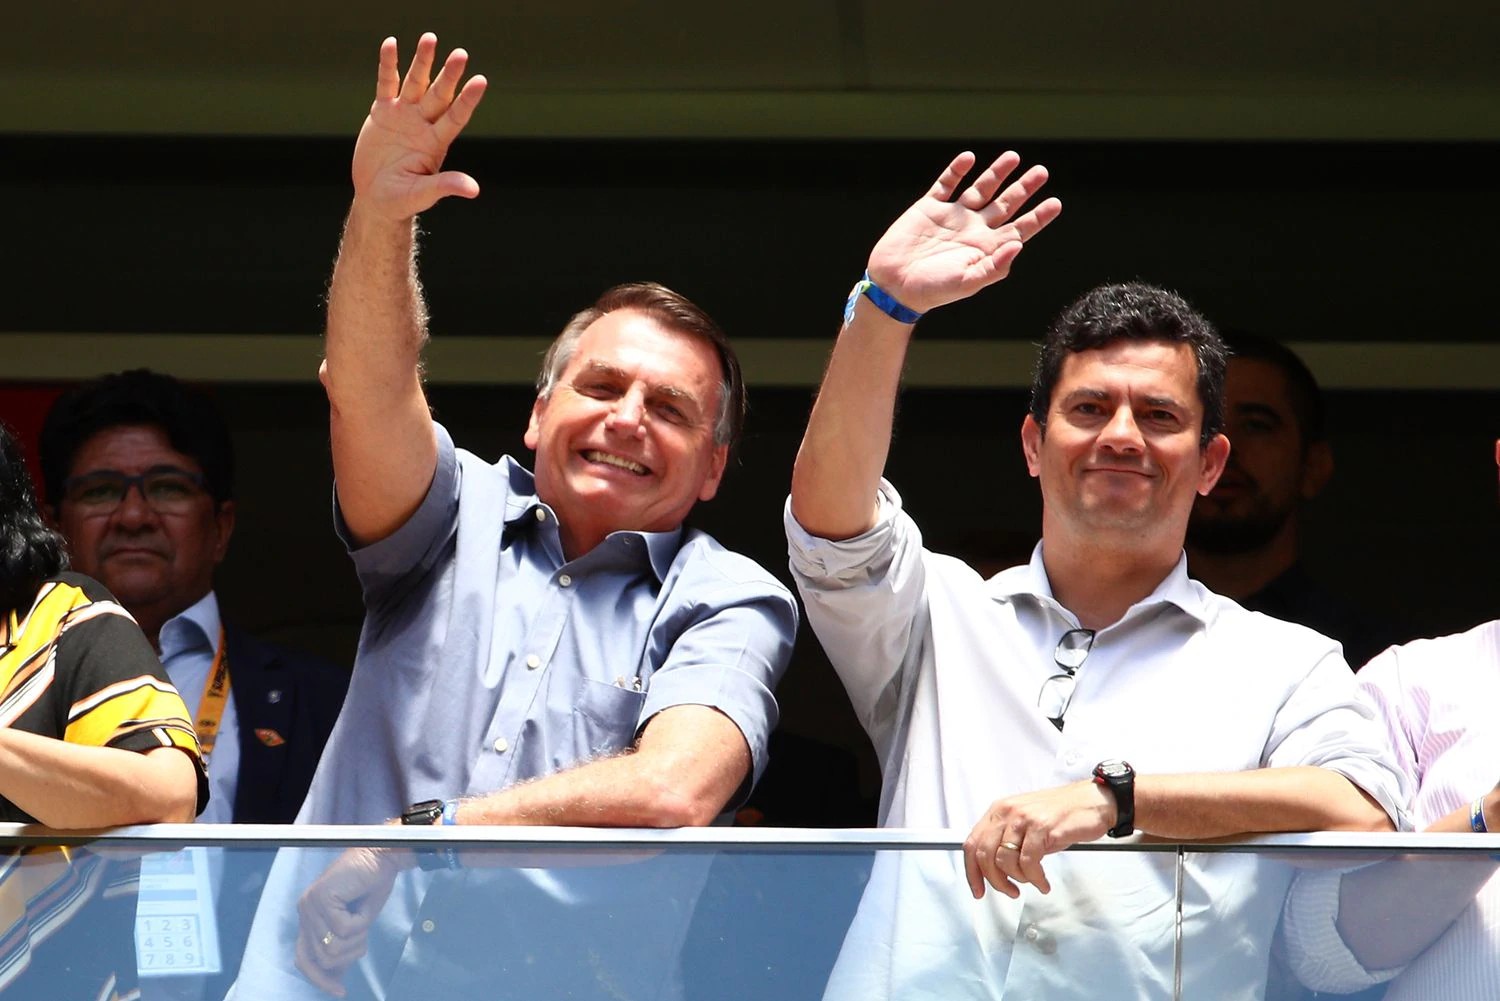 El presidente Bolsonaro y su entonces ministro Moro en la final de la Supercopa brasileña en febrero en Brasilia.BUDA MENDES / GETTY IMAGES